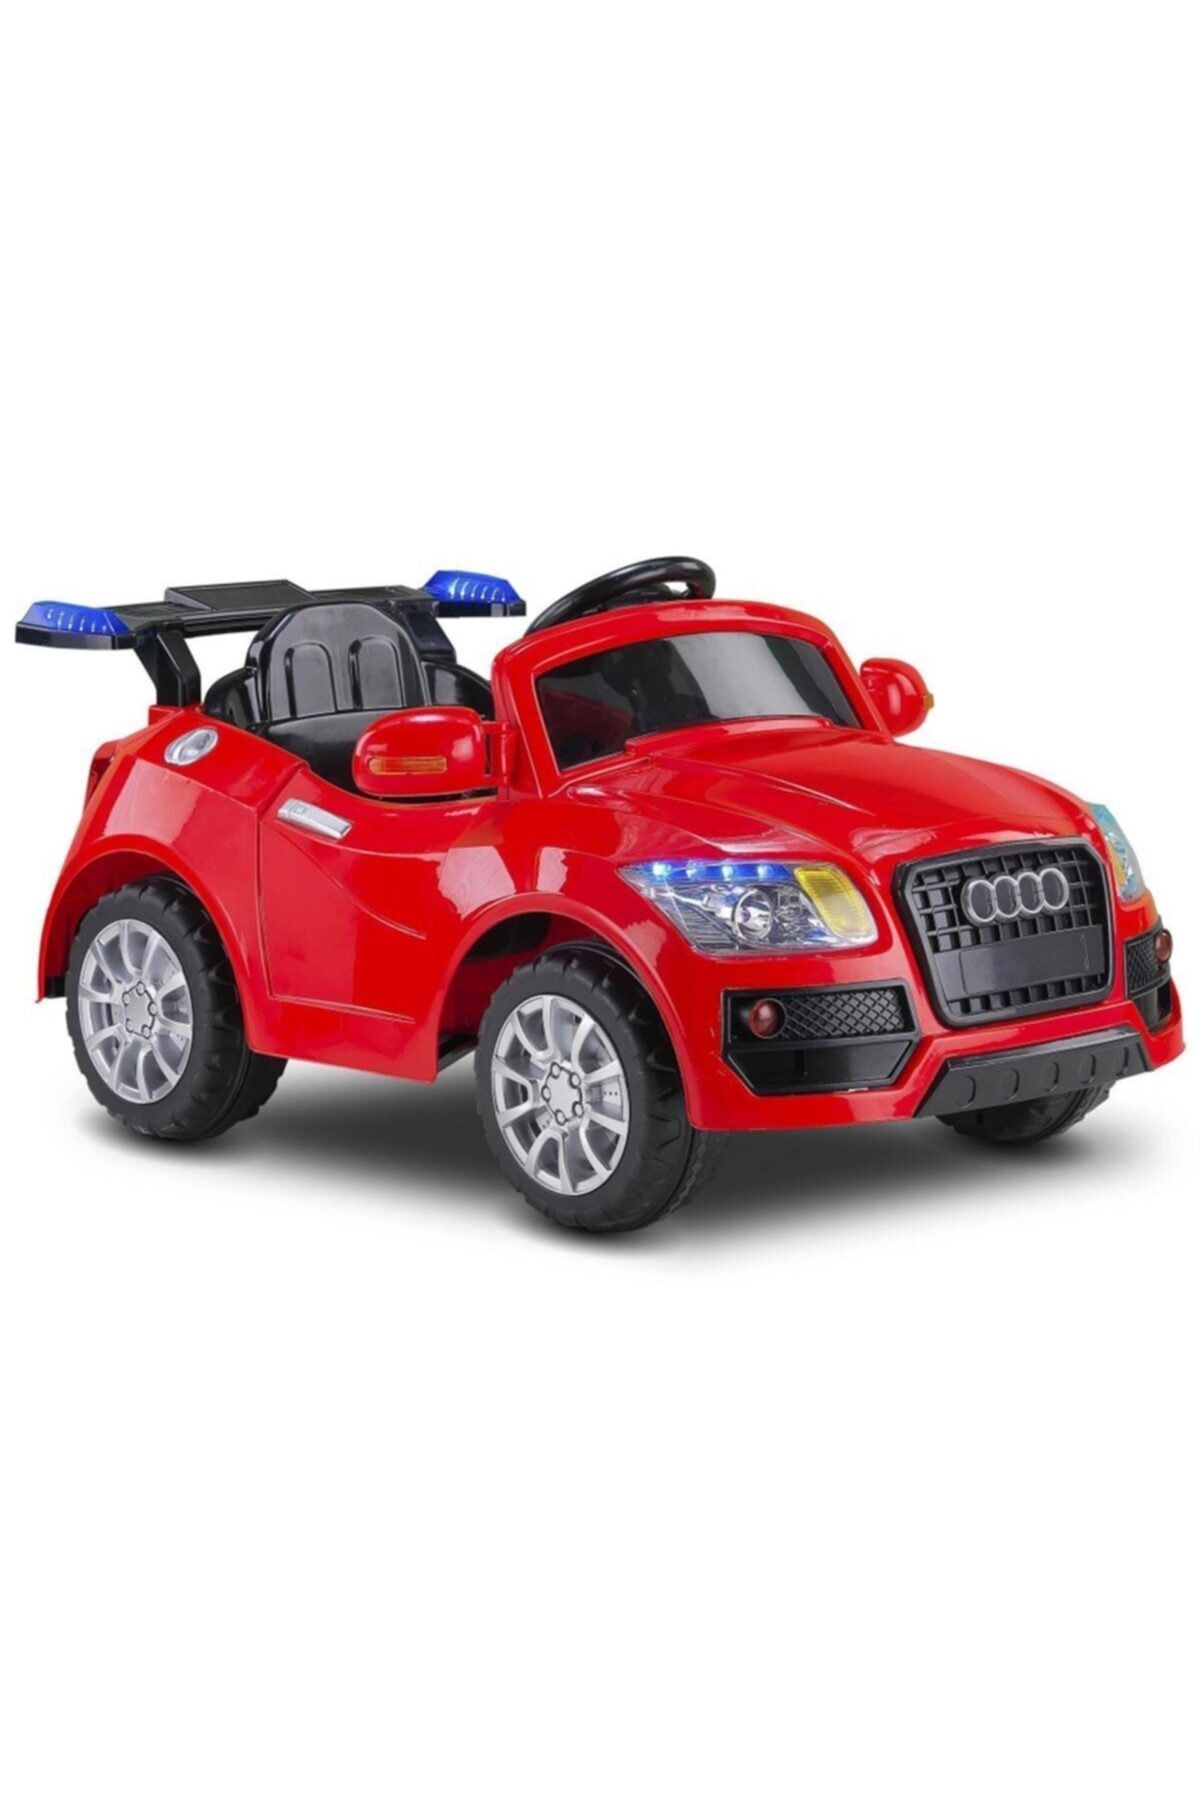 Babyhope Marka: Baby Hope 436 Audi 12v Kırmızı Akülü Araba Kategori: Bebek & Aktivite Oyuncakları